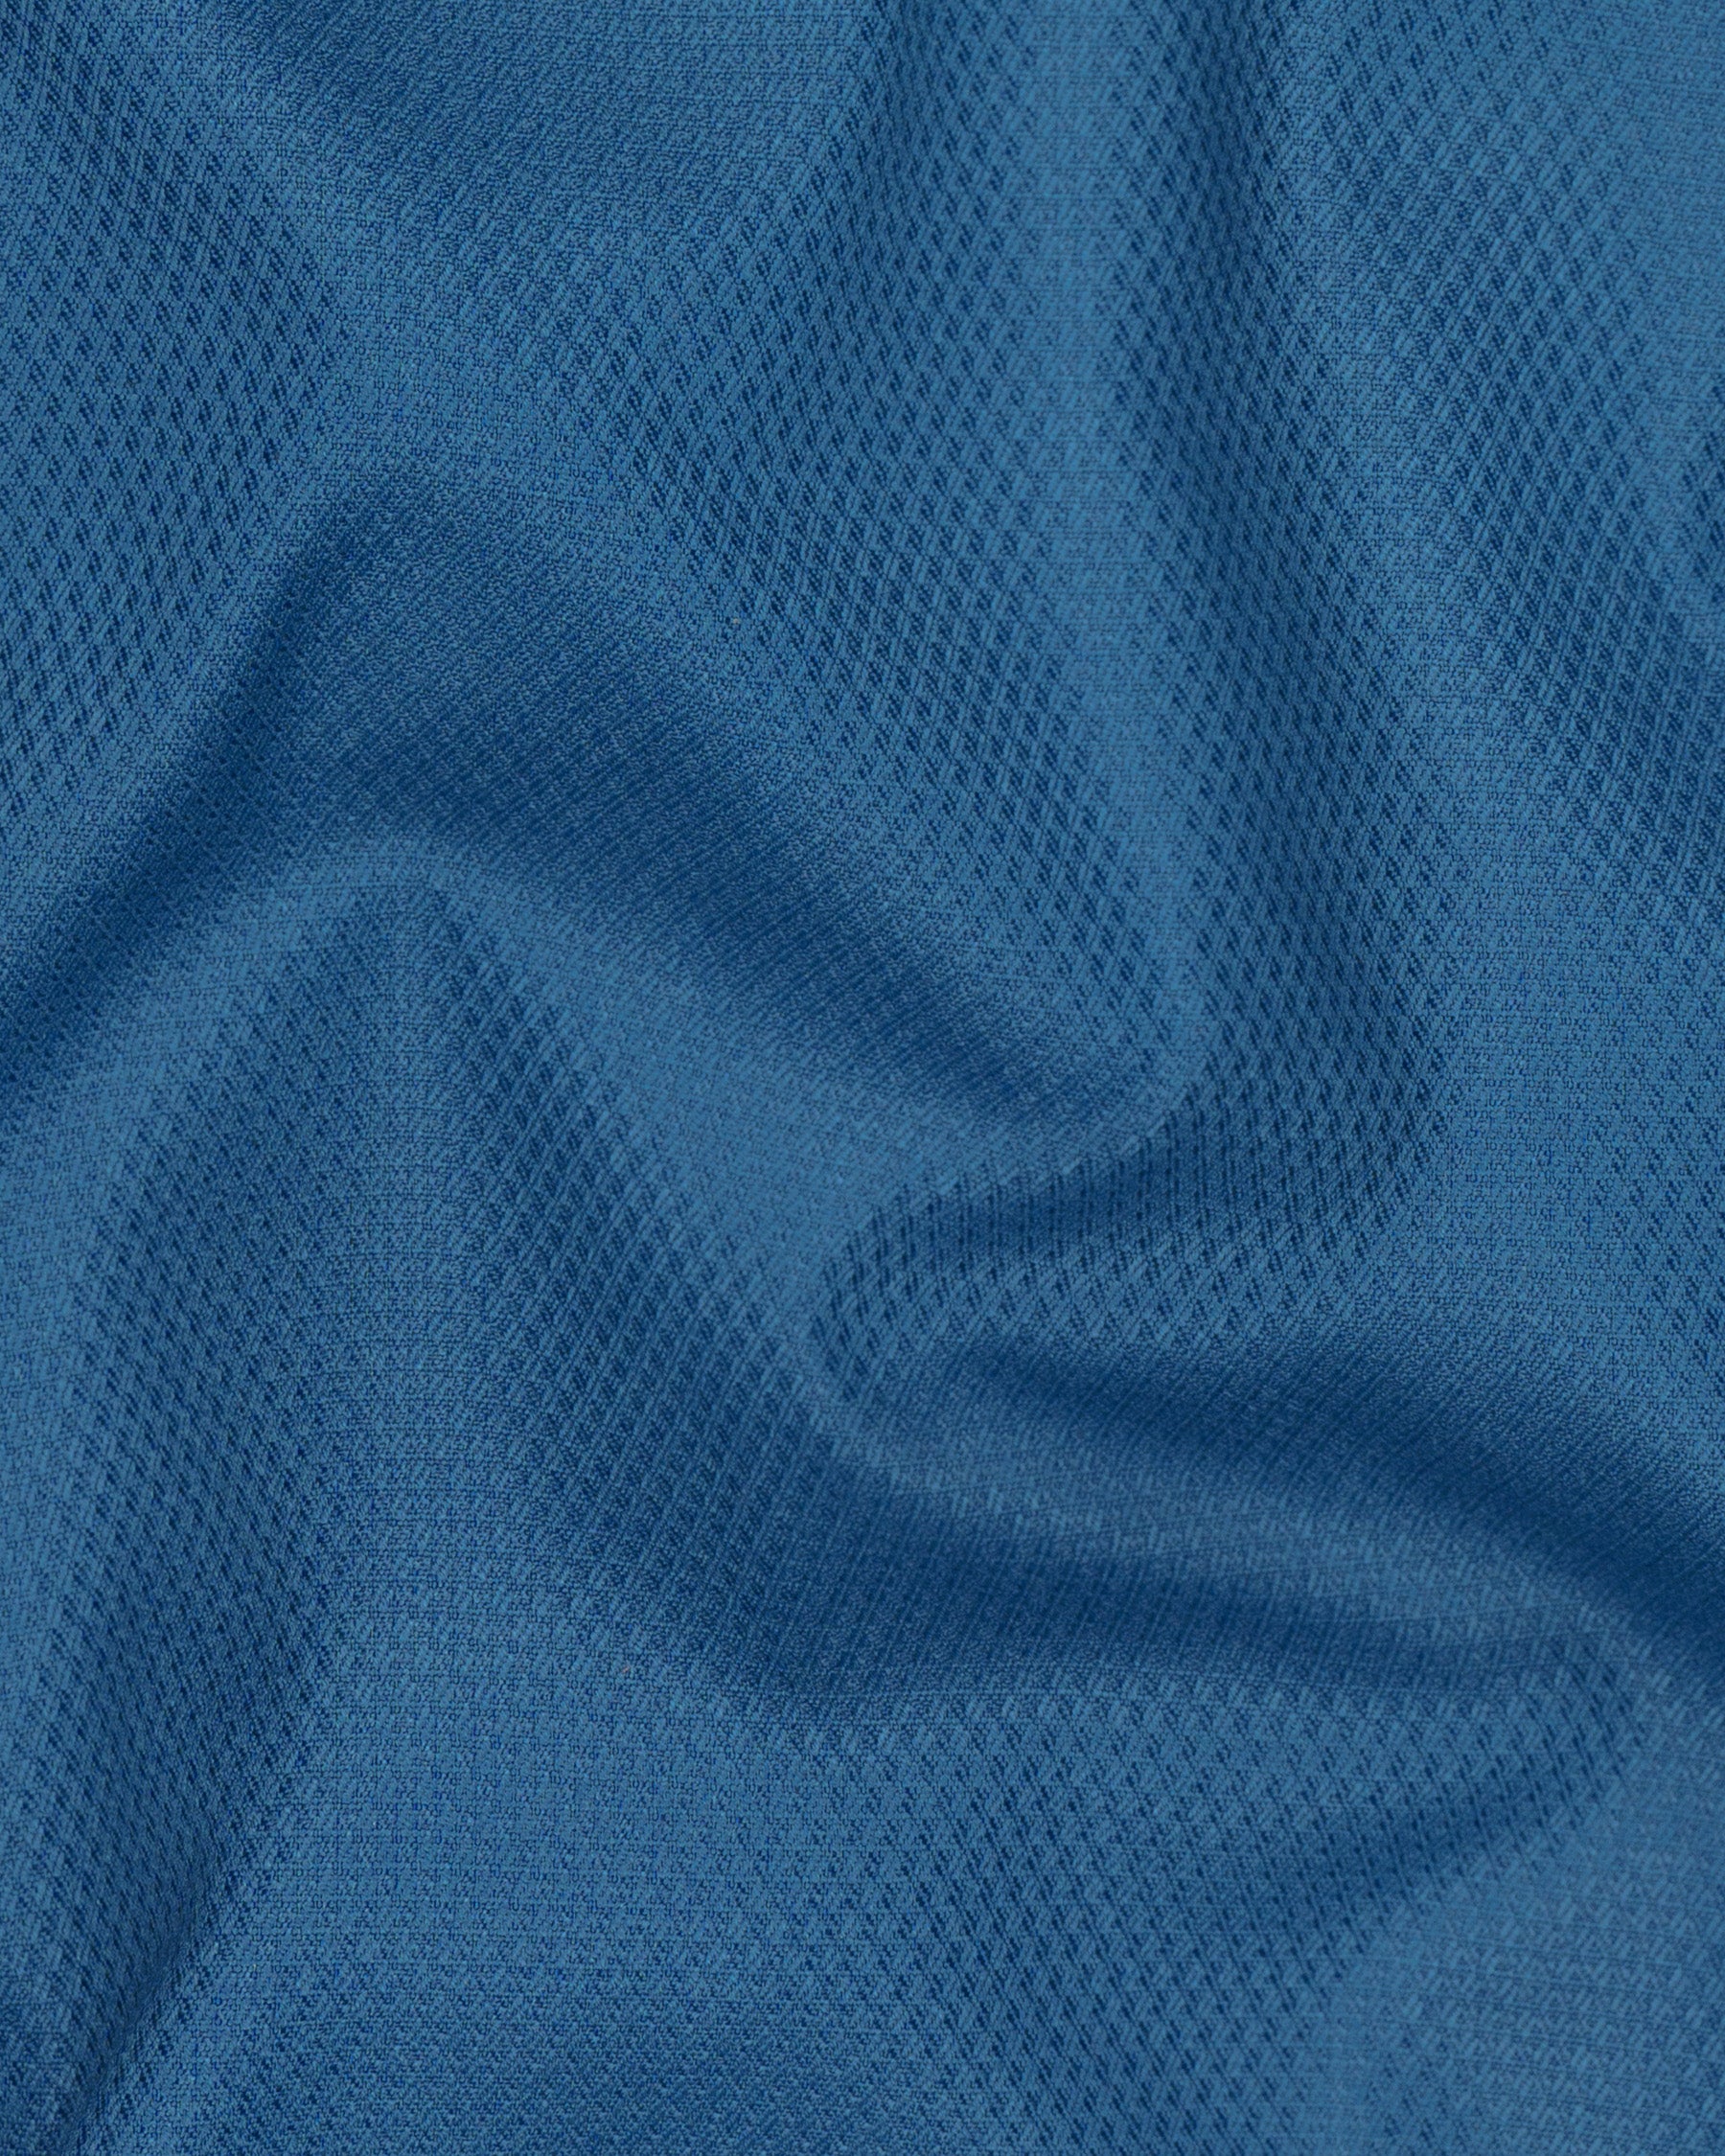 Orient Blue Diamond Textured Woolrich Blazer